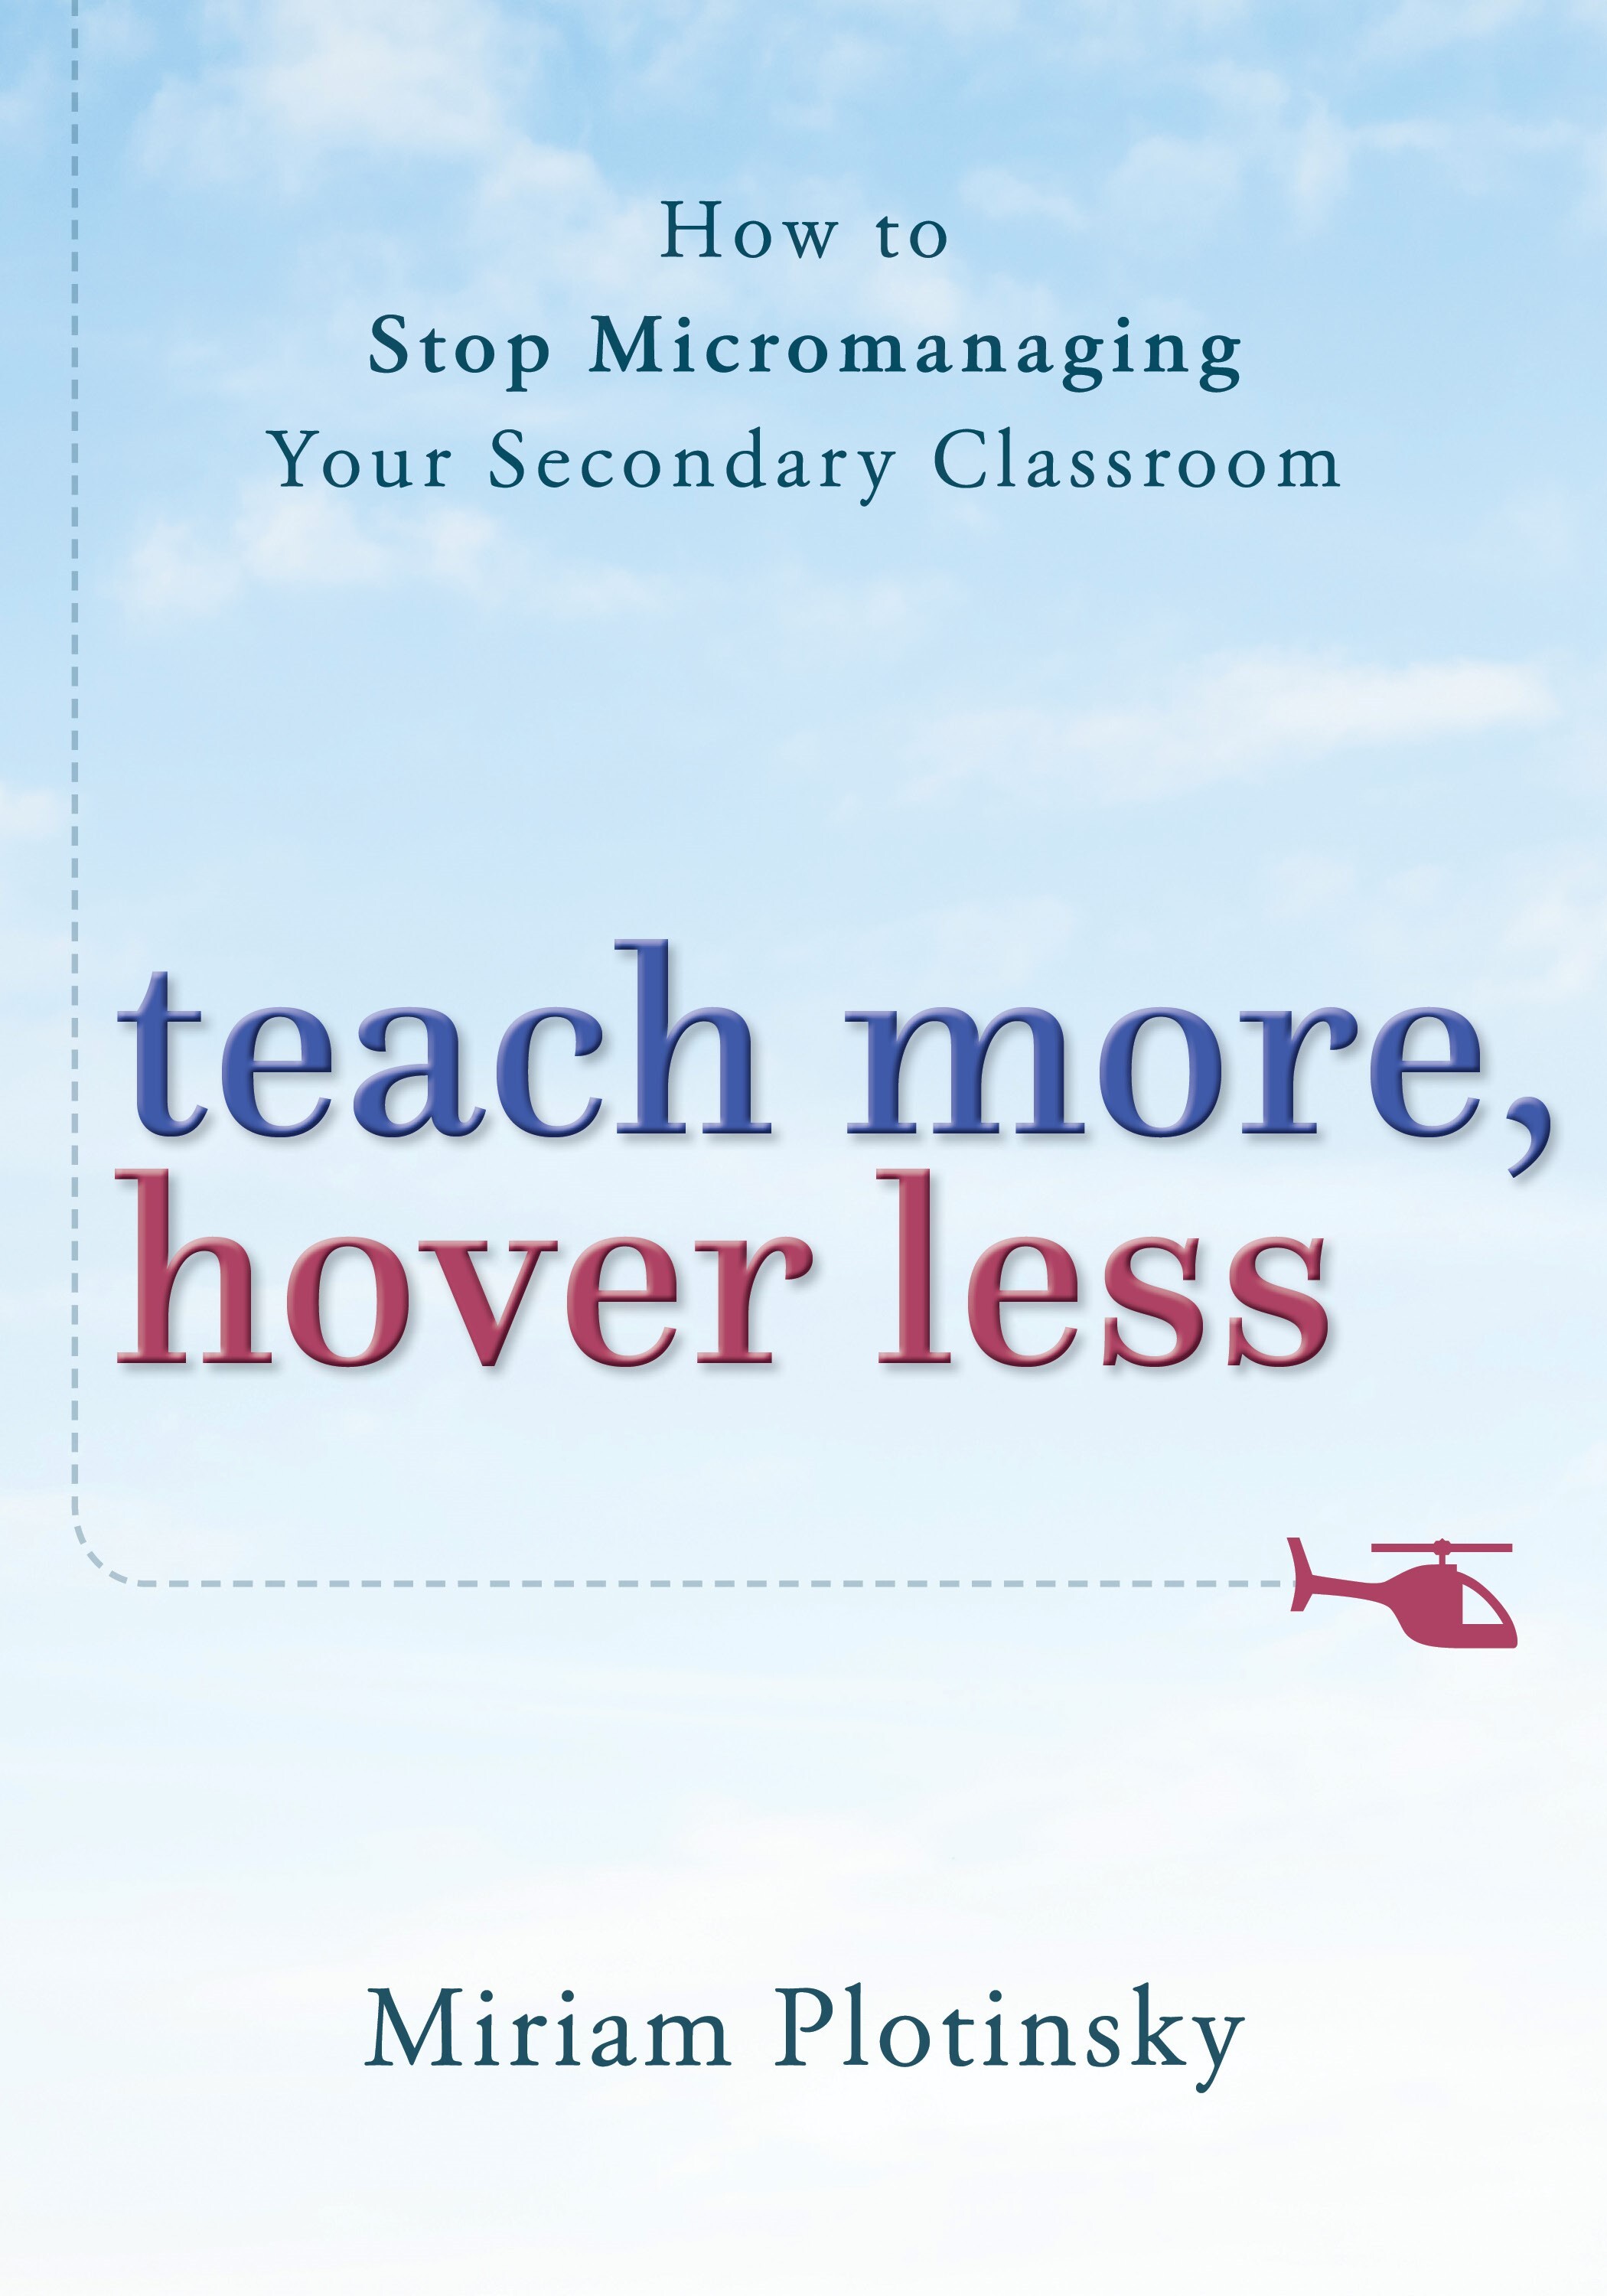 teach_more_hover_less9vb2i.jpg